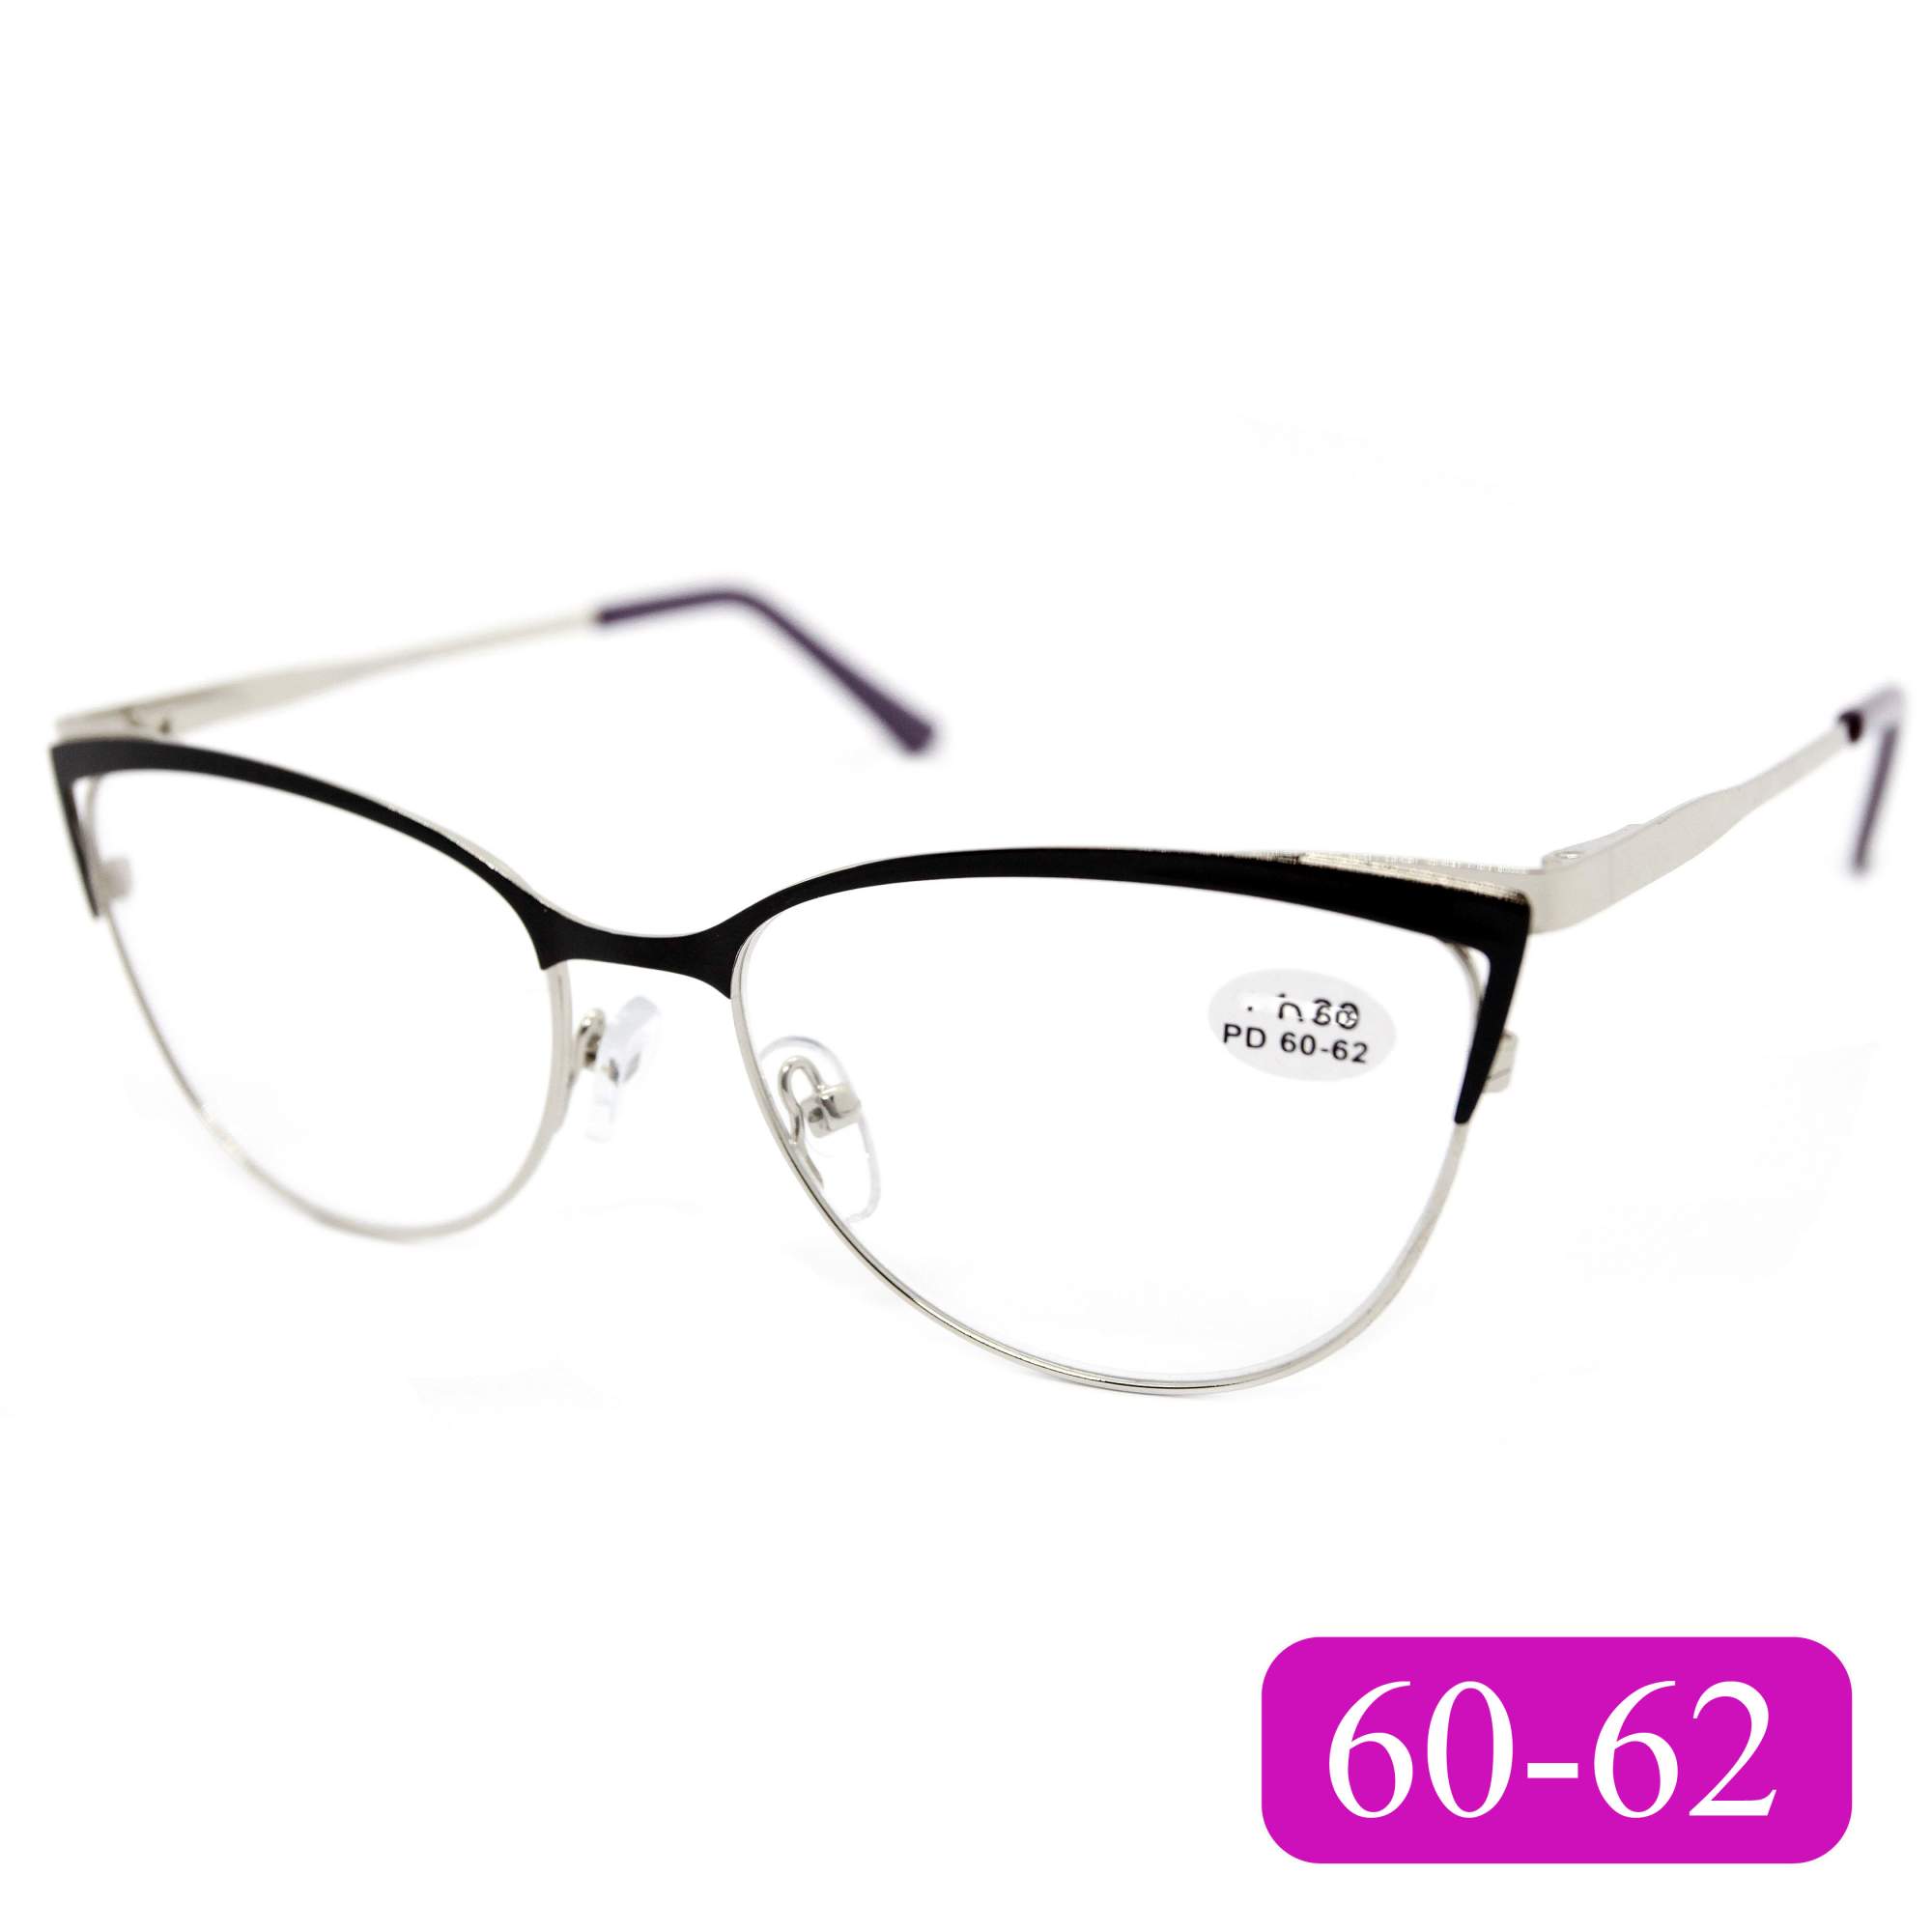 Готовые очки для зрения Glodiatr 1541 -5,00, без футляра, цвет черный, РЦ 60-62